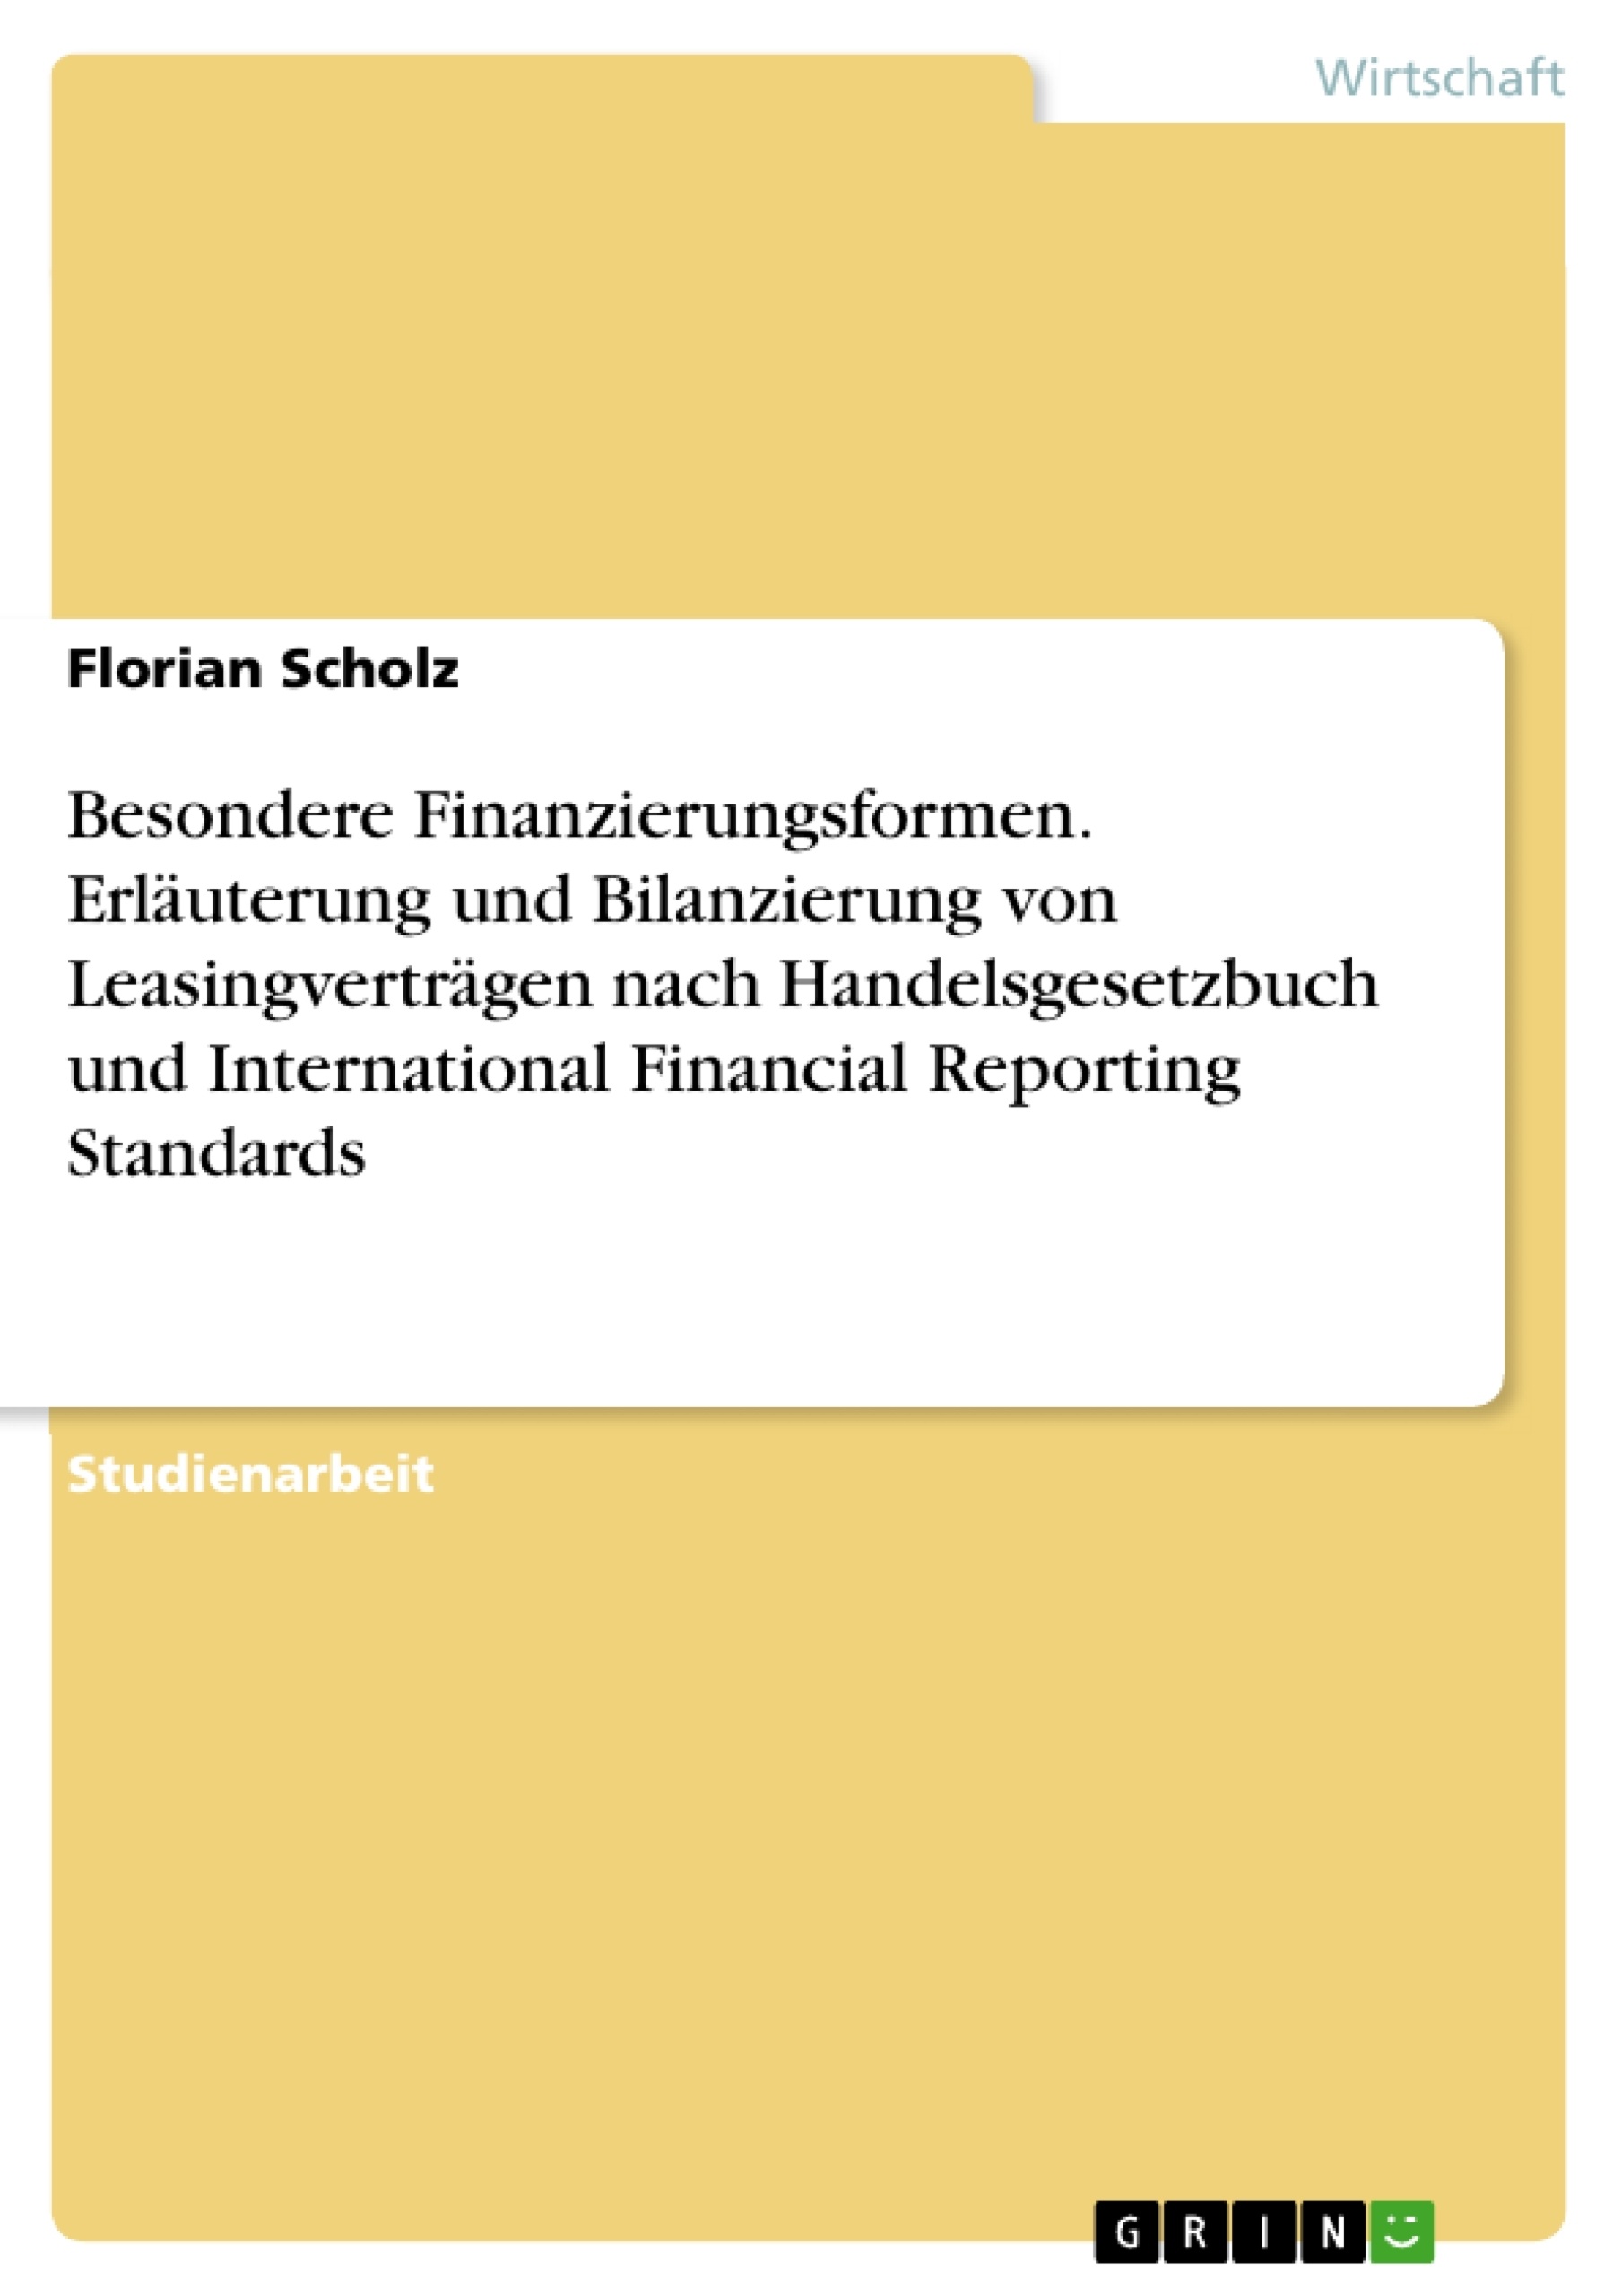 Título: Besondere Finanzierungsformen. Erläuterung und Bilanzierung von Leasingverträgen nach Handelsgesetzbuch und International Financial Reporting Standards